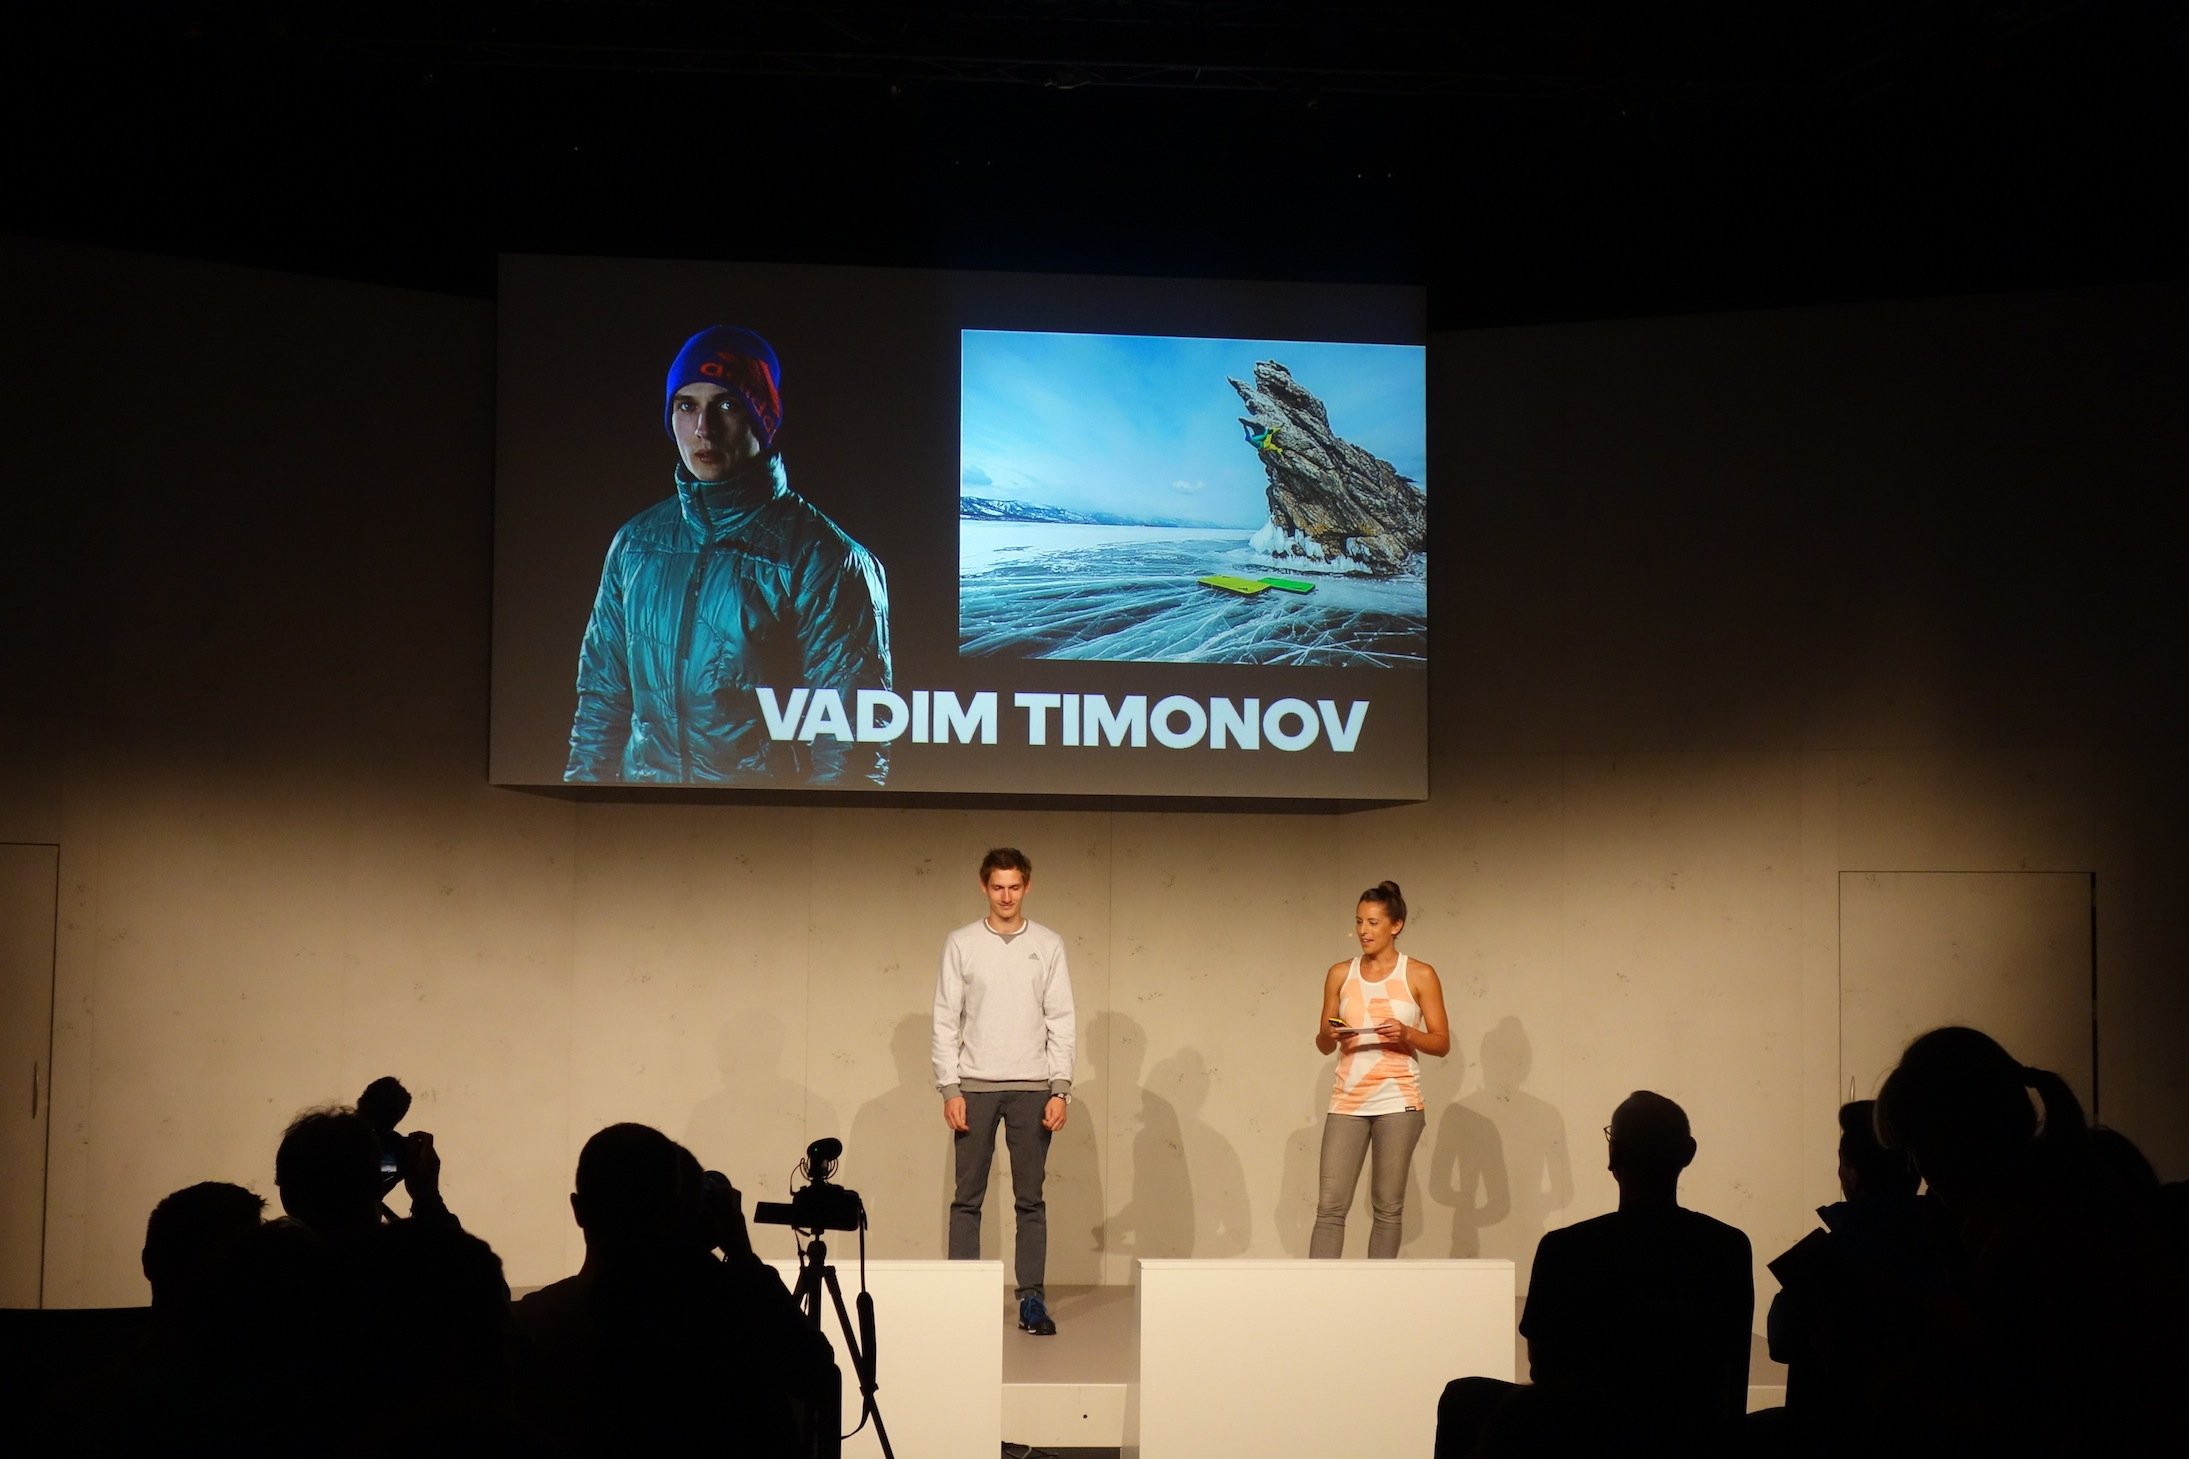 airfreshing_2016_adidas_outdoor_claim_freedom_vadim_timonov